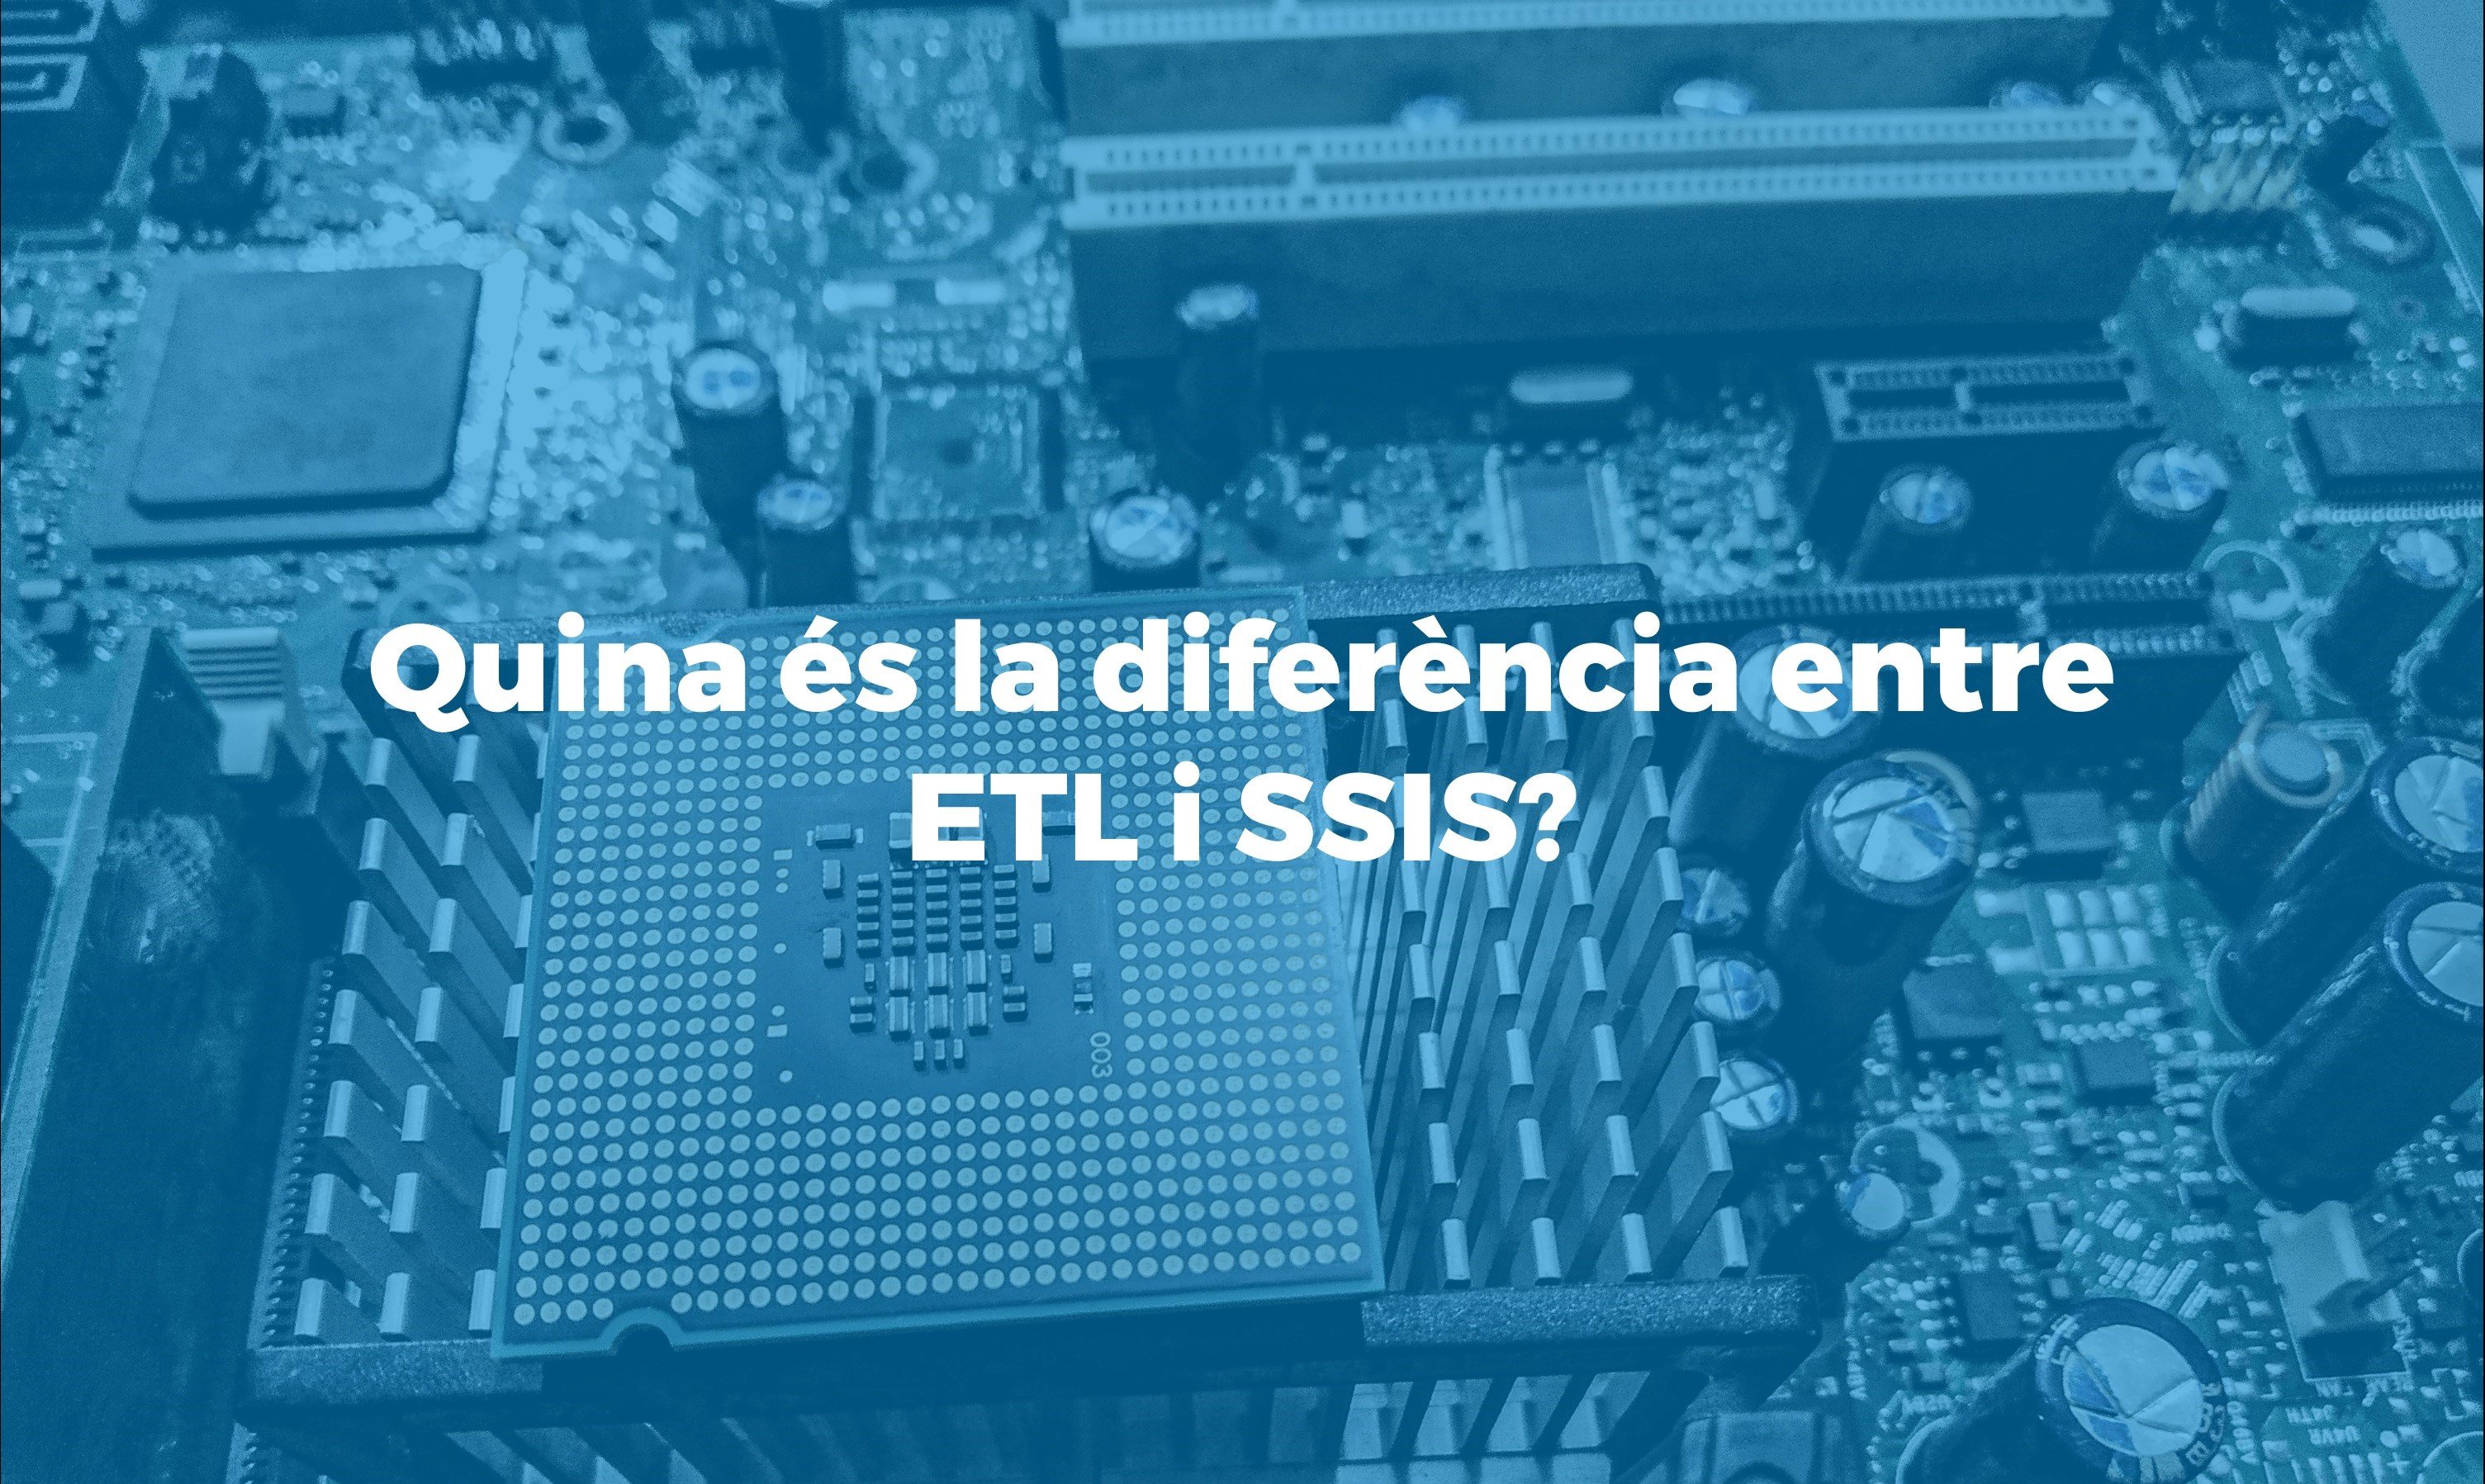 Expliquem la diferencia entre ETL i SSIS